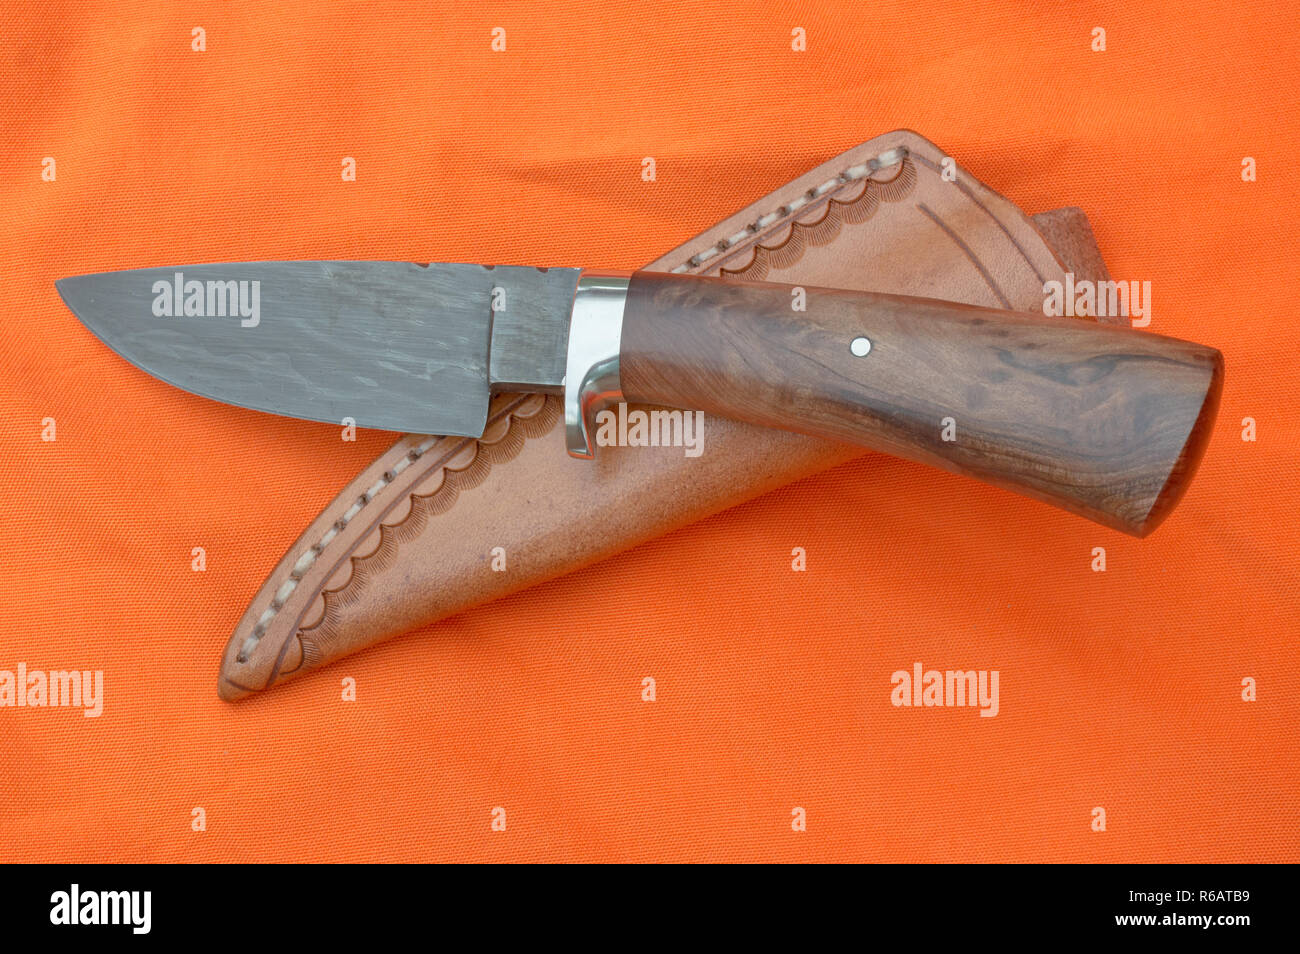 Ein Damaskus skinner Messer und Scheide sind oben auf einem hellen orange  Hintergrund Stoff angezeigt Stockfotografie - Alamy